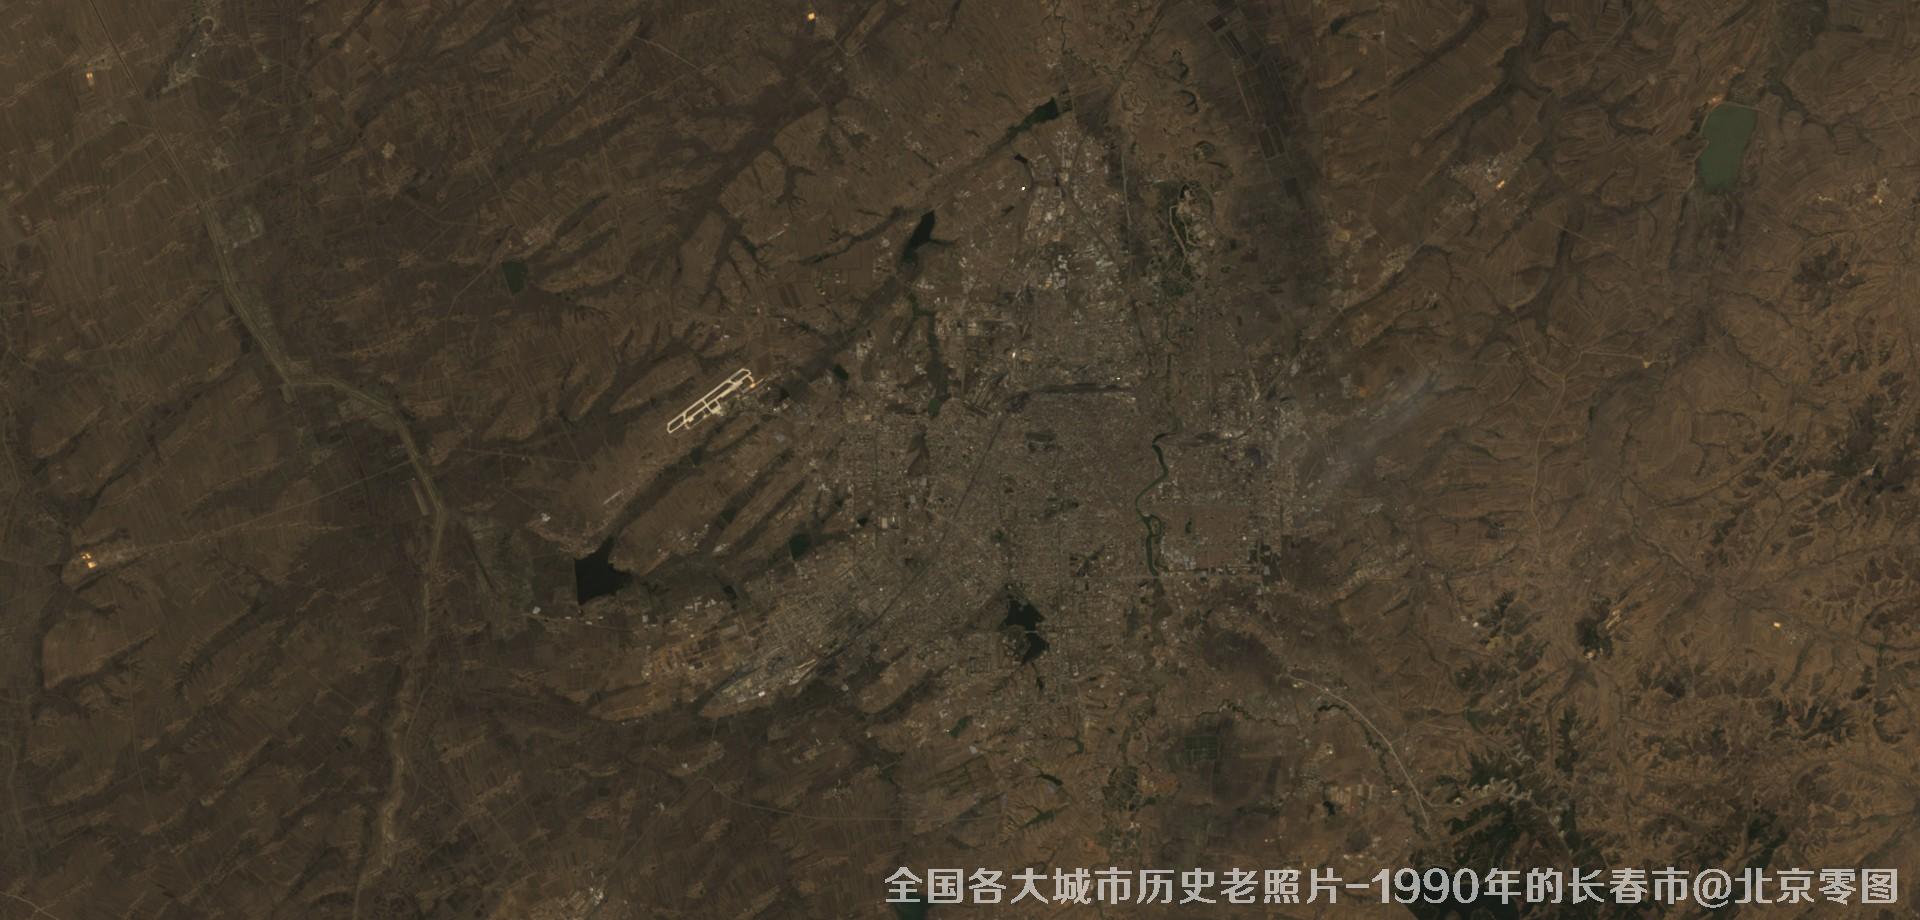 美国Landsat卫星拍摄的1990年的吉林省长春市历史卫星影像图